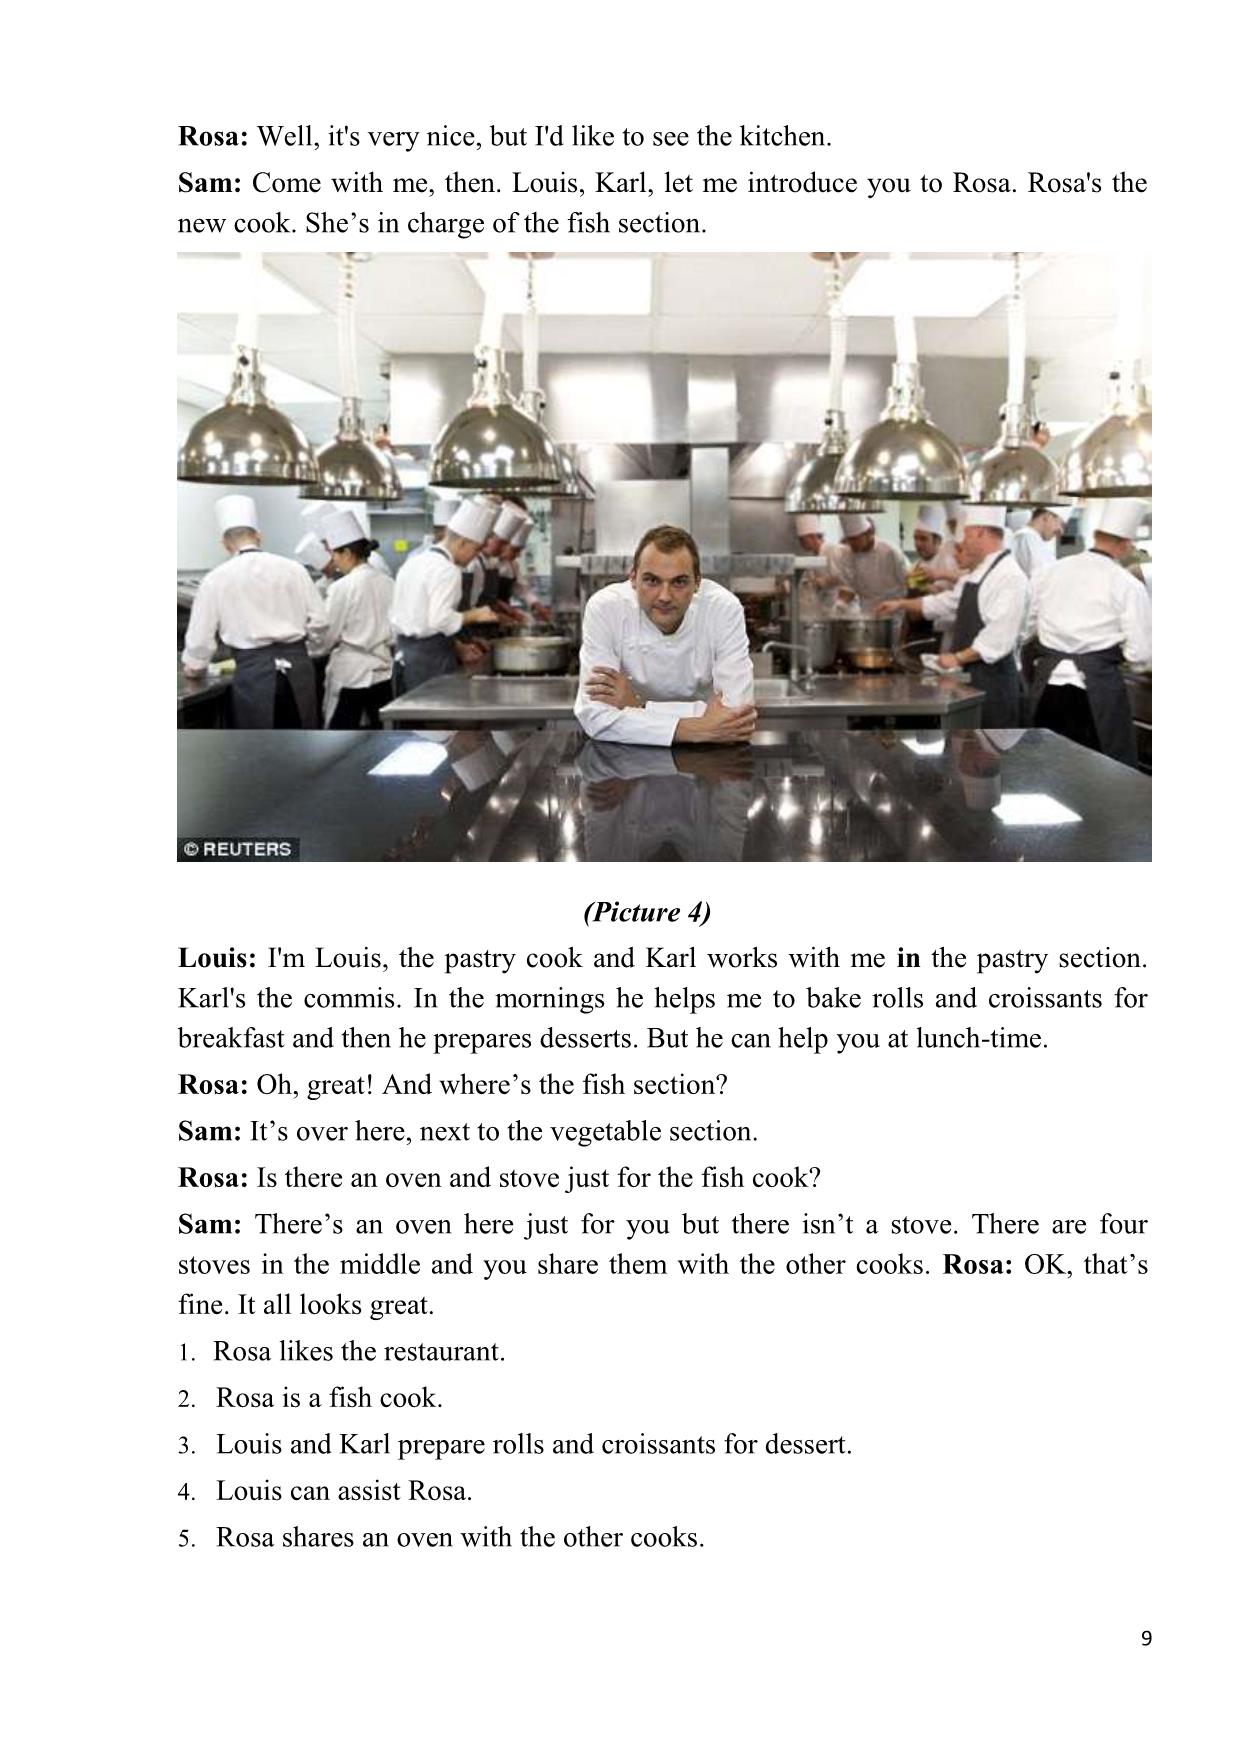 Giáo trình Tiếng Anh chuyên ngành nhà hàng (Phần 1) trang 8